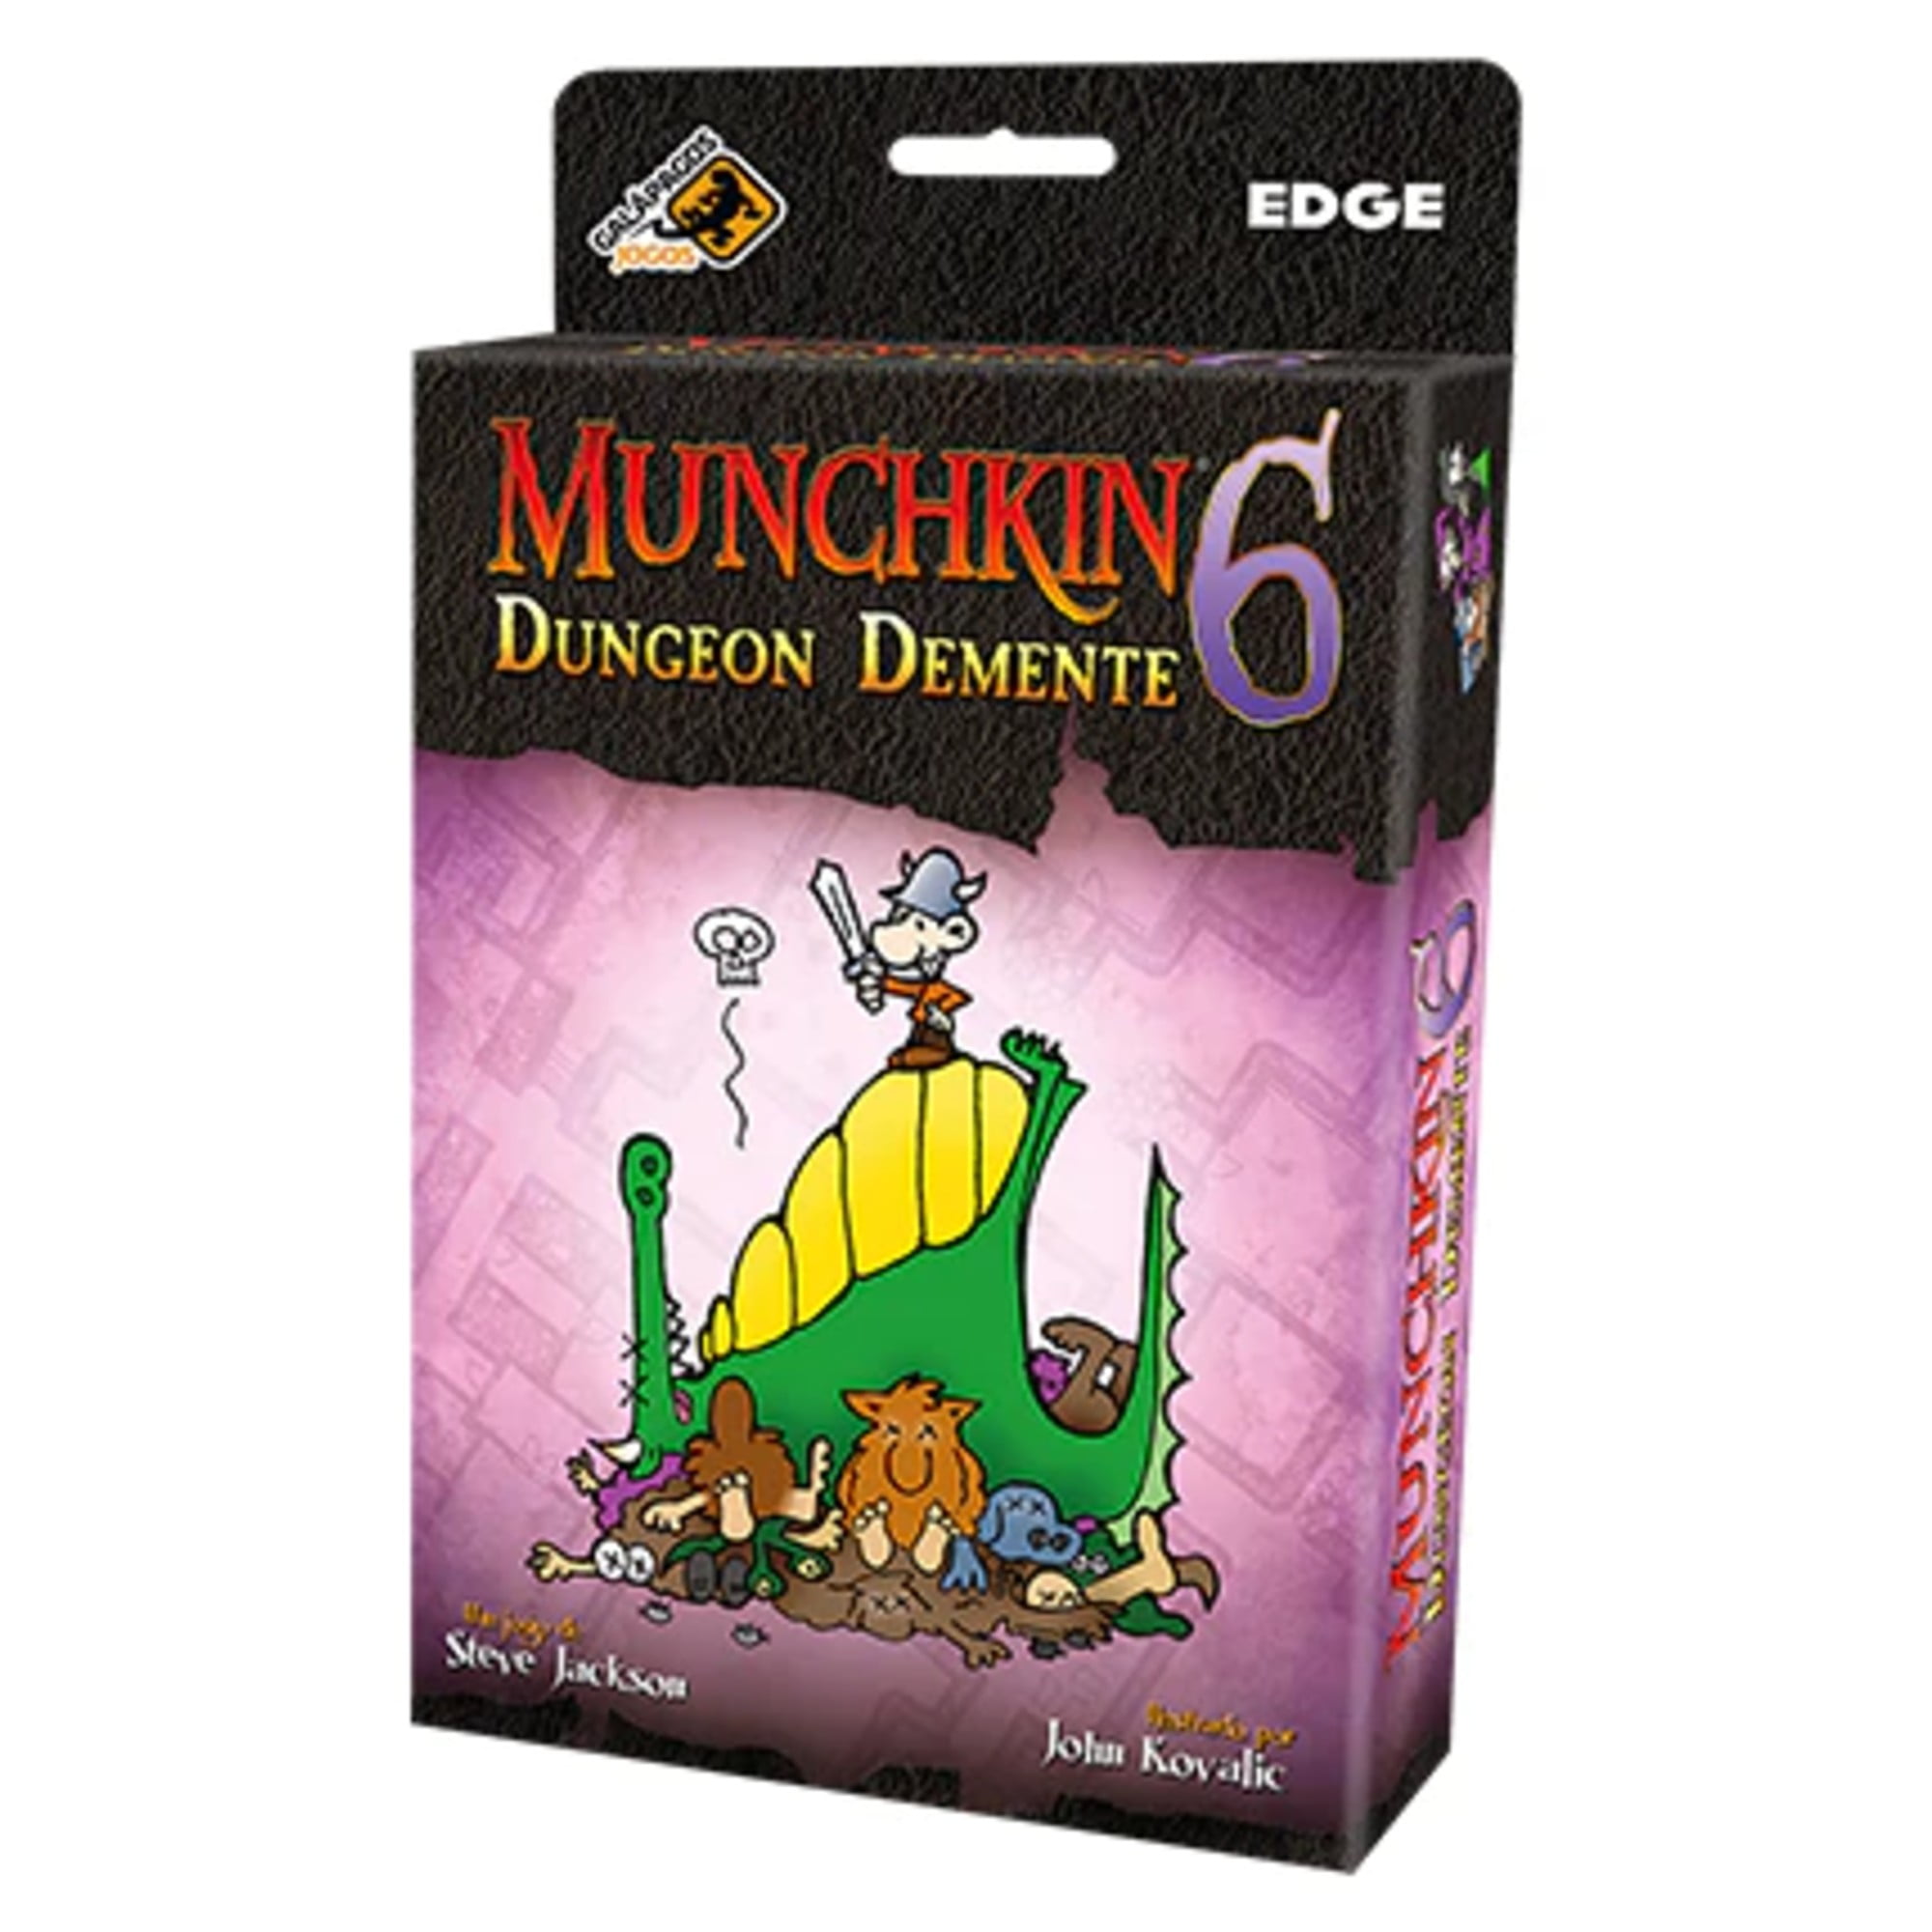 Munchkin 6 Dungeon Demente - Expansão